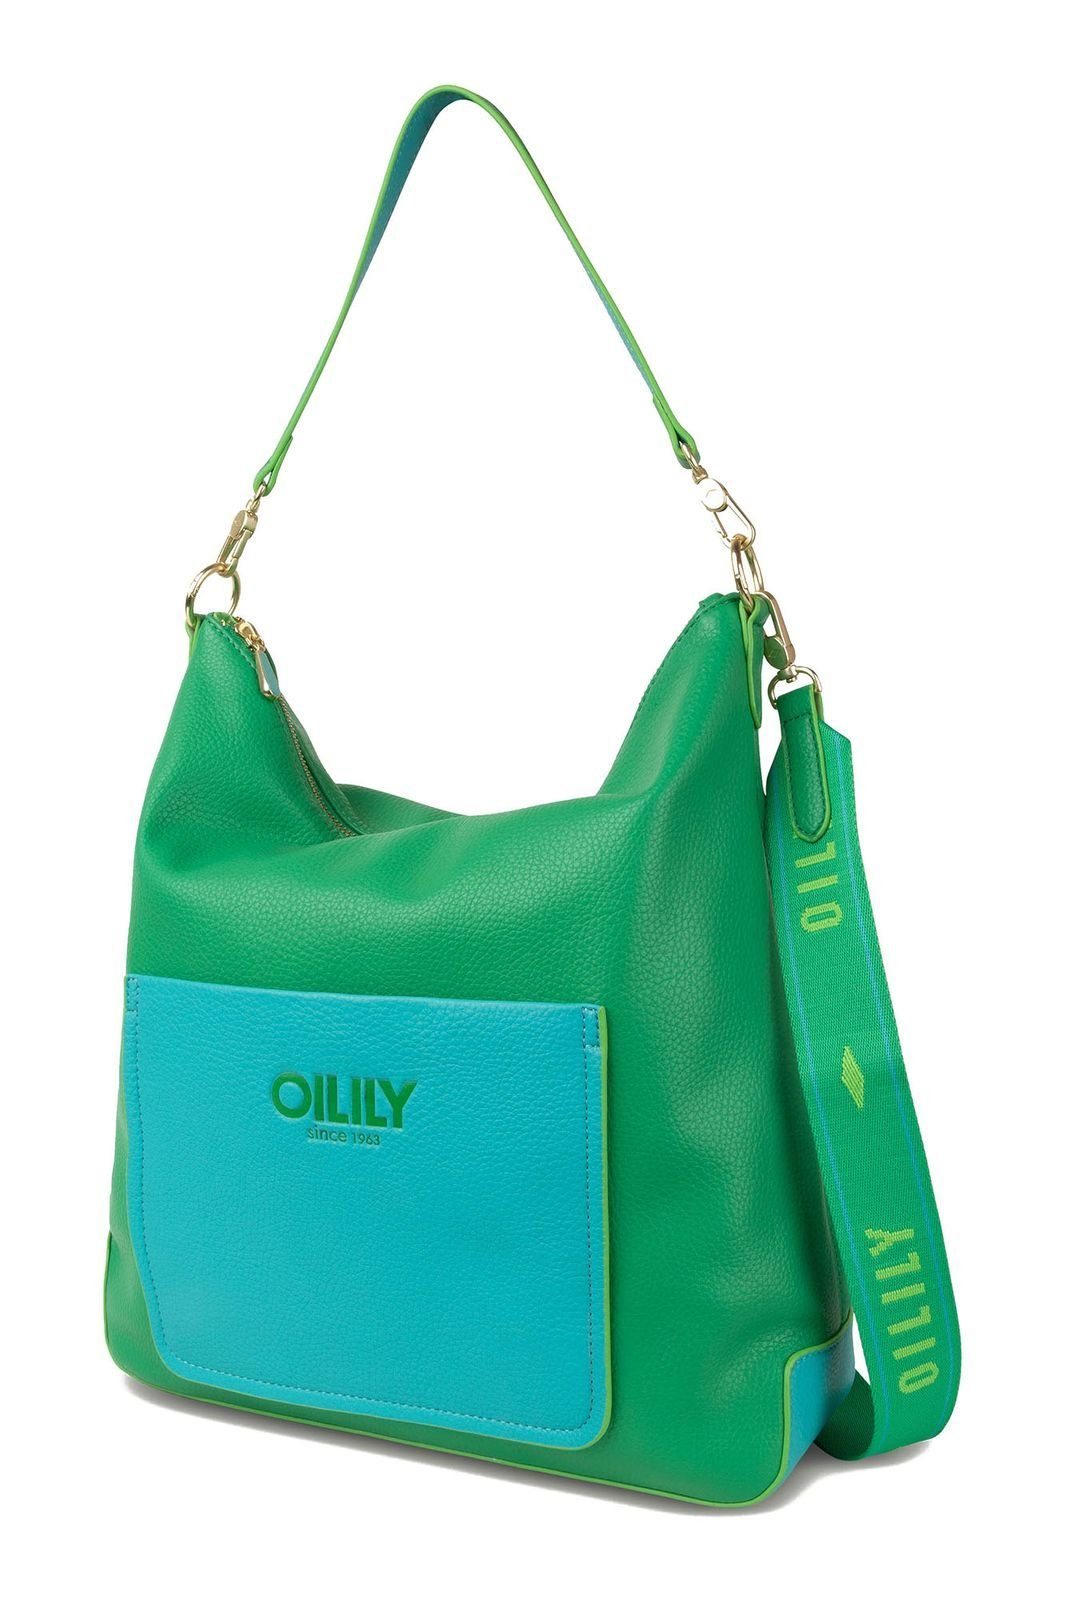 Harper Oilily Green Handtasche